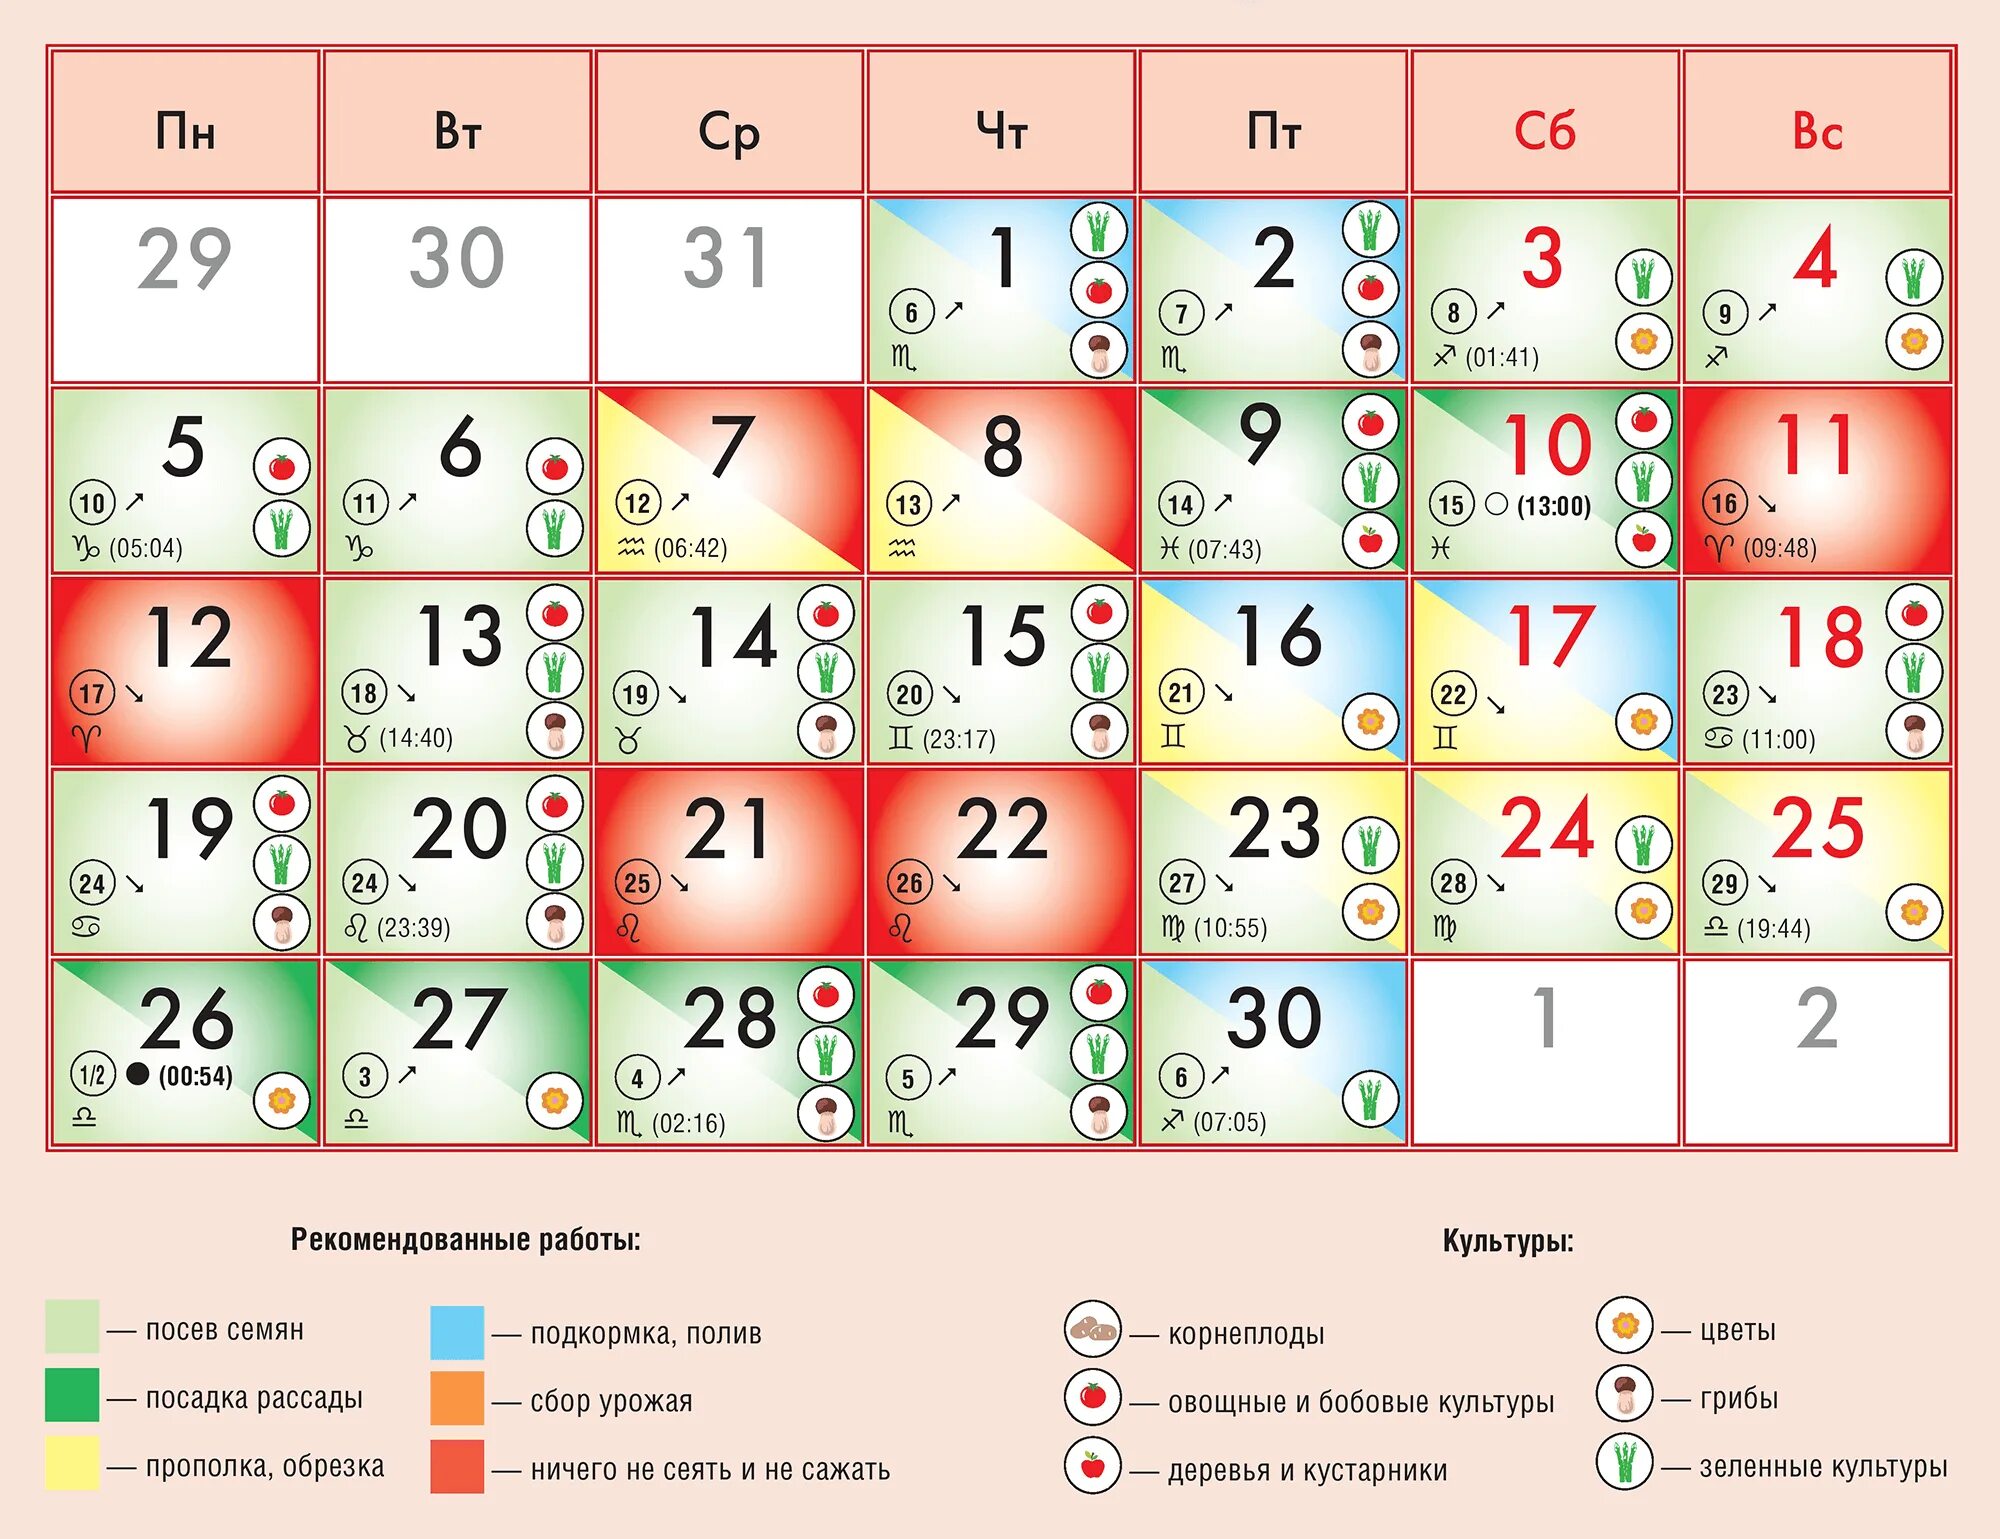 Лунный календарь стрижек сентябре. Лунный календарь на сентябрь 2022. Лунный календарь на сентябрь 2022 года. Календарь благоприятных дней для посадки. Благоприятные дни посадки в сентябре 2022 г.